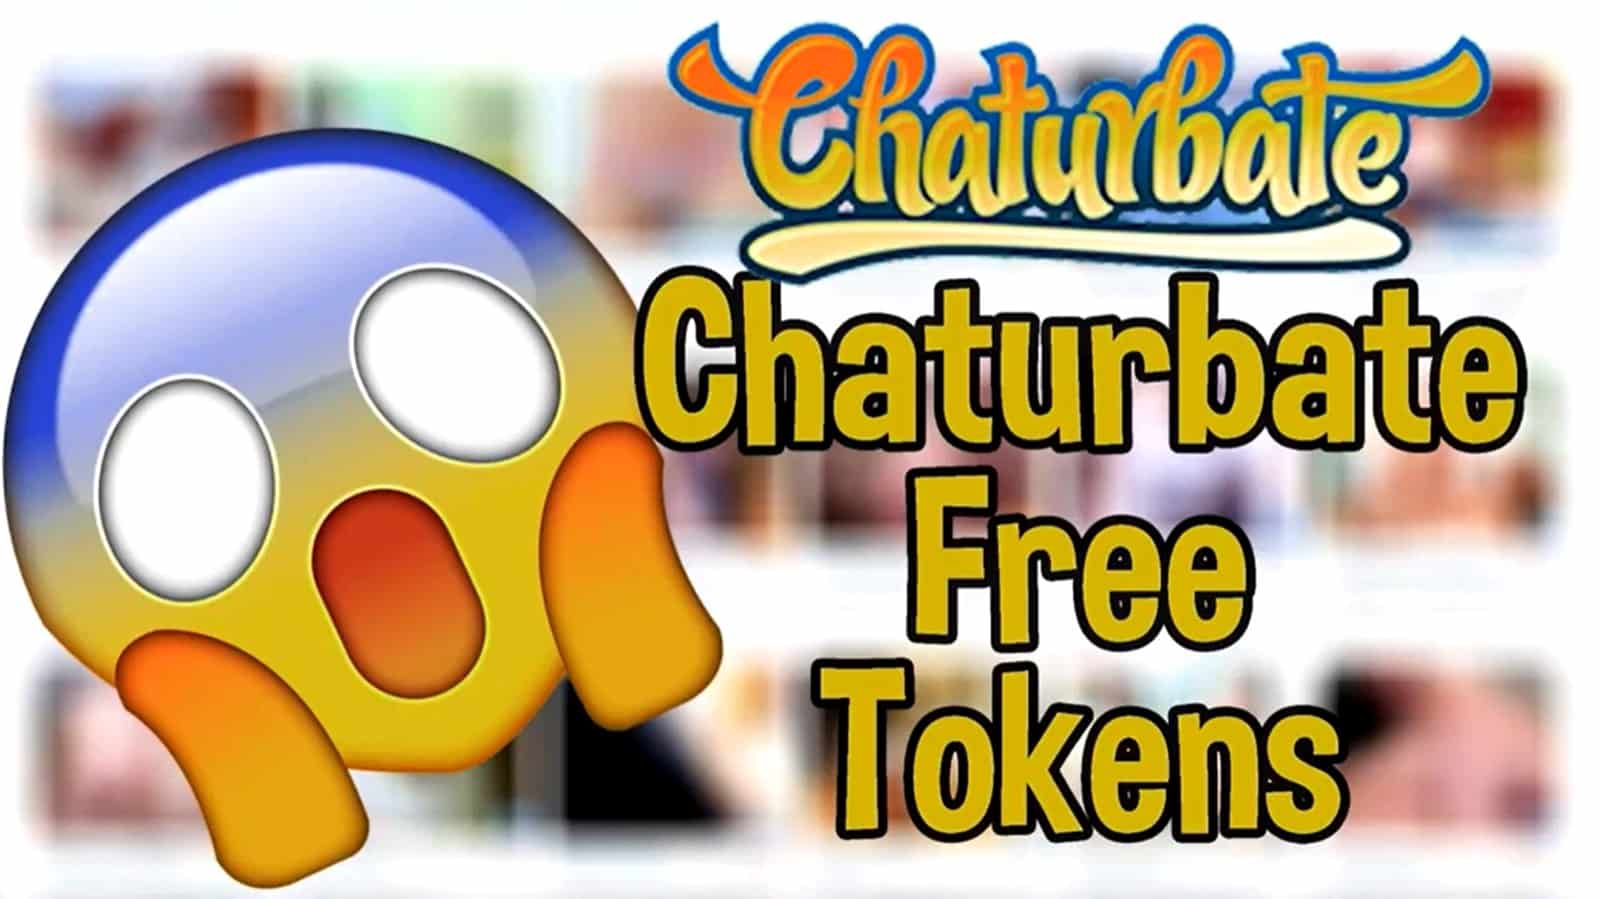 Best of Chaturbate hack token generator